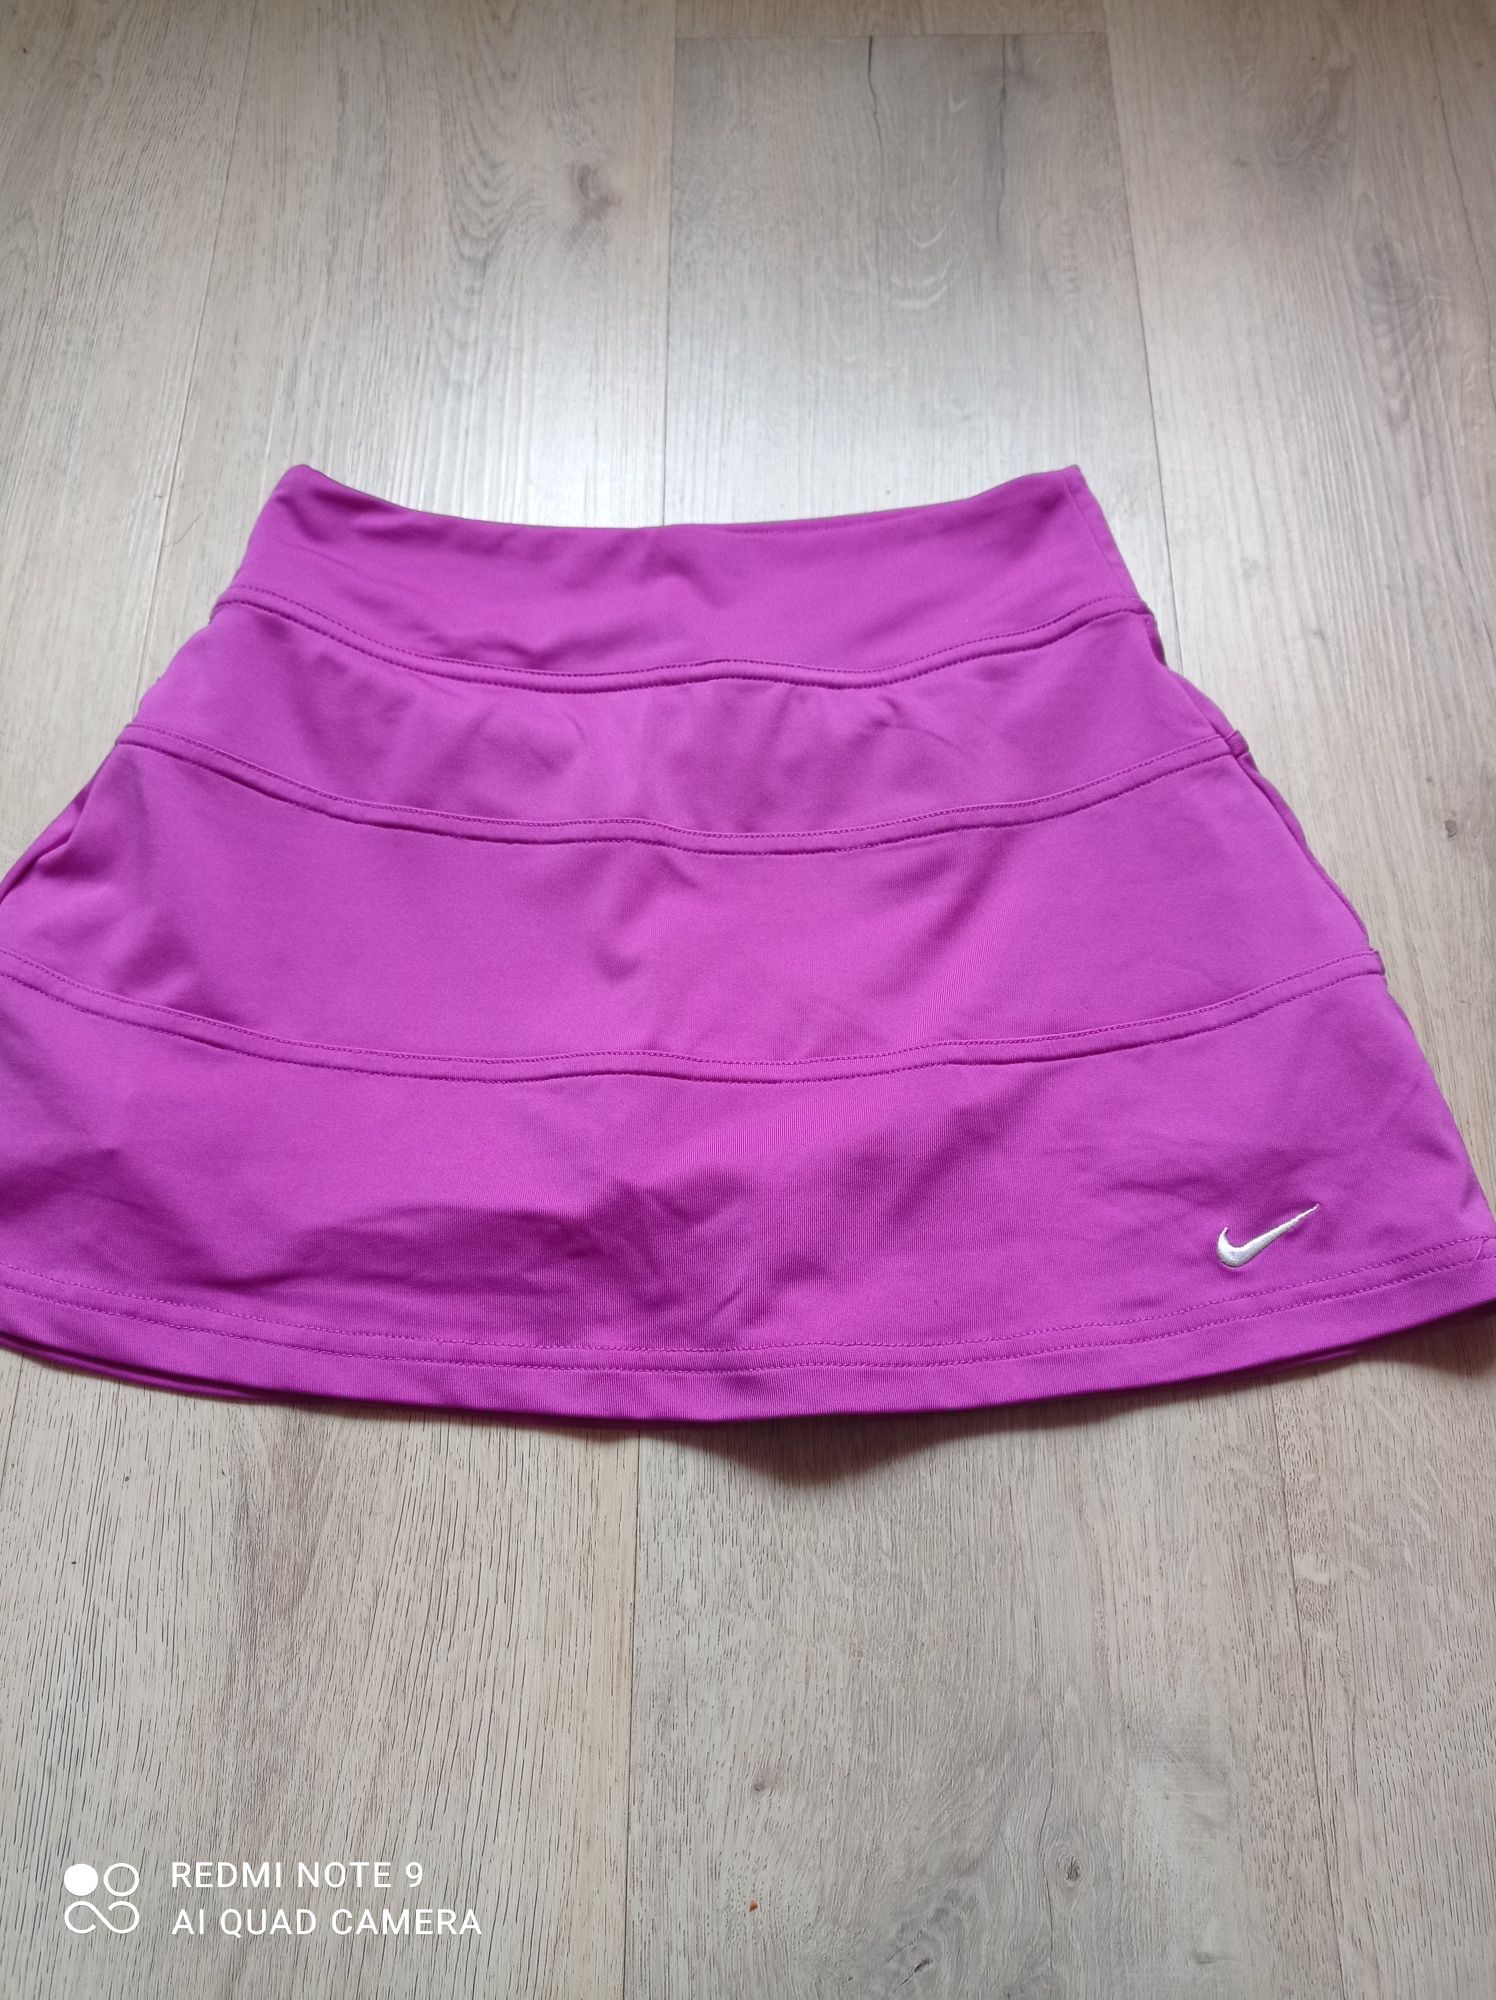 Spódnica-spodenki sportowe Nike dri-fit do tenisa XS 34